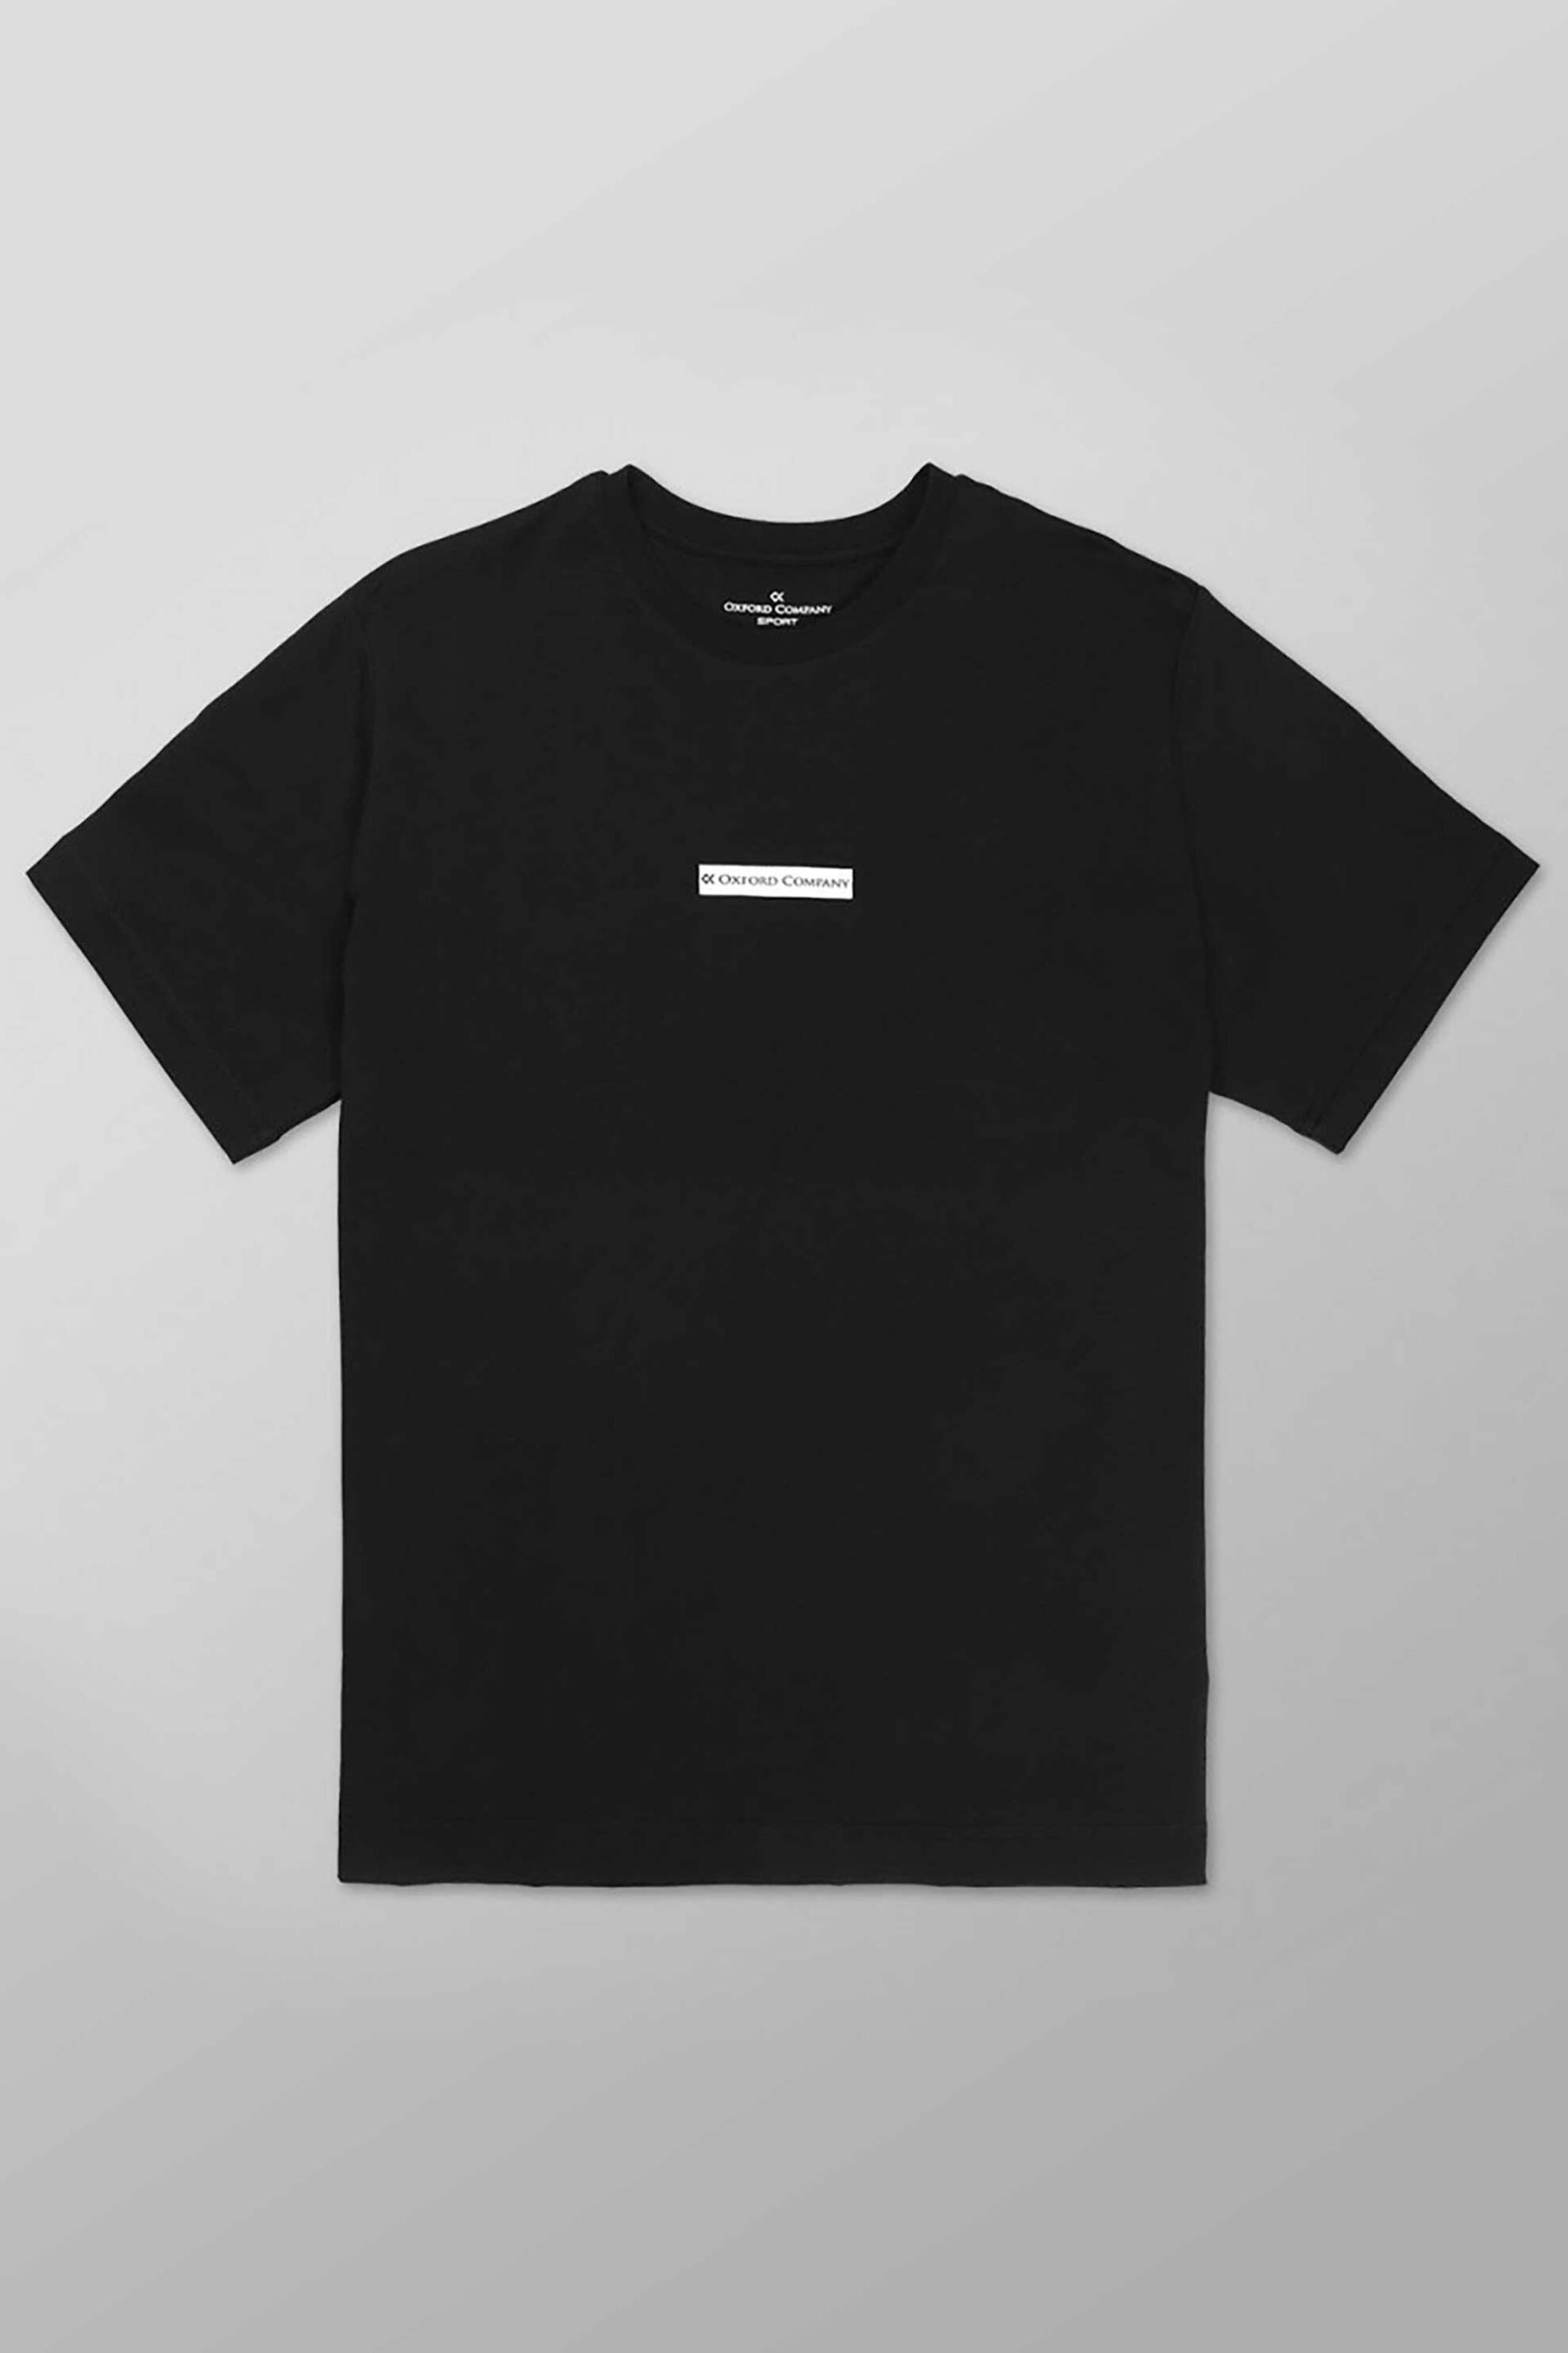 Ανδρική Μόδα > Ανδρικά Ρούχα > Ανδρικές Μπλούζες > Ανδρικά T-Shirts Oxford Company ανδρικό T-shirt με contrast logo print Regular Fit - K611-MT20.18 Μαύρο